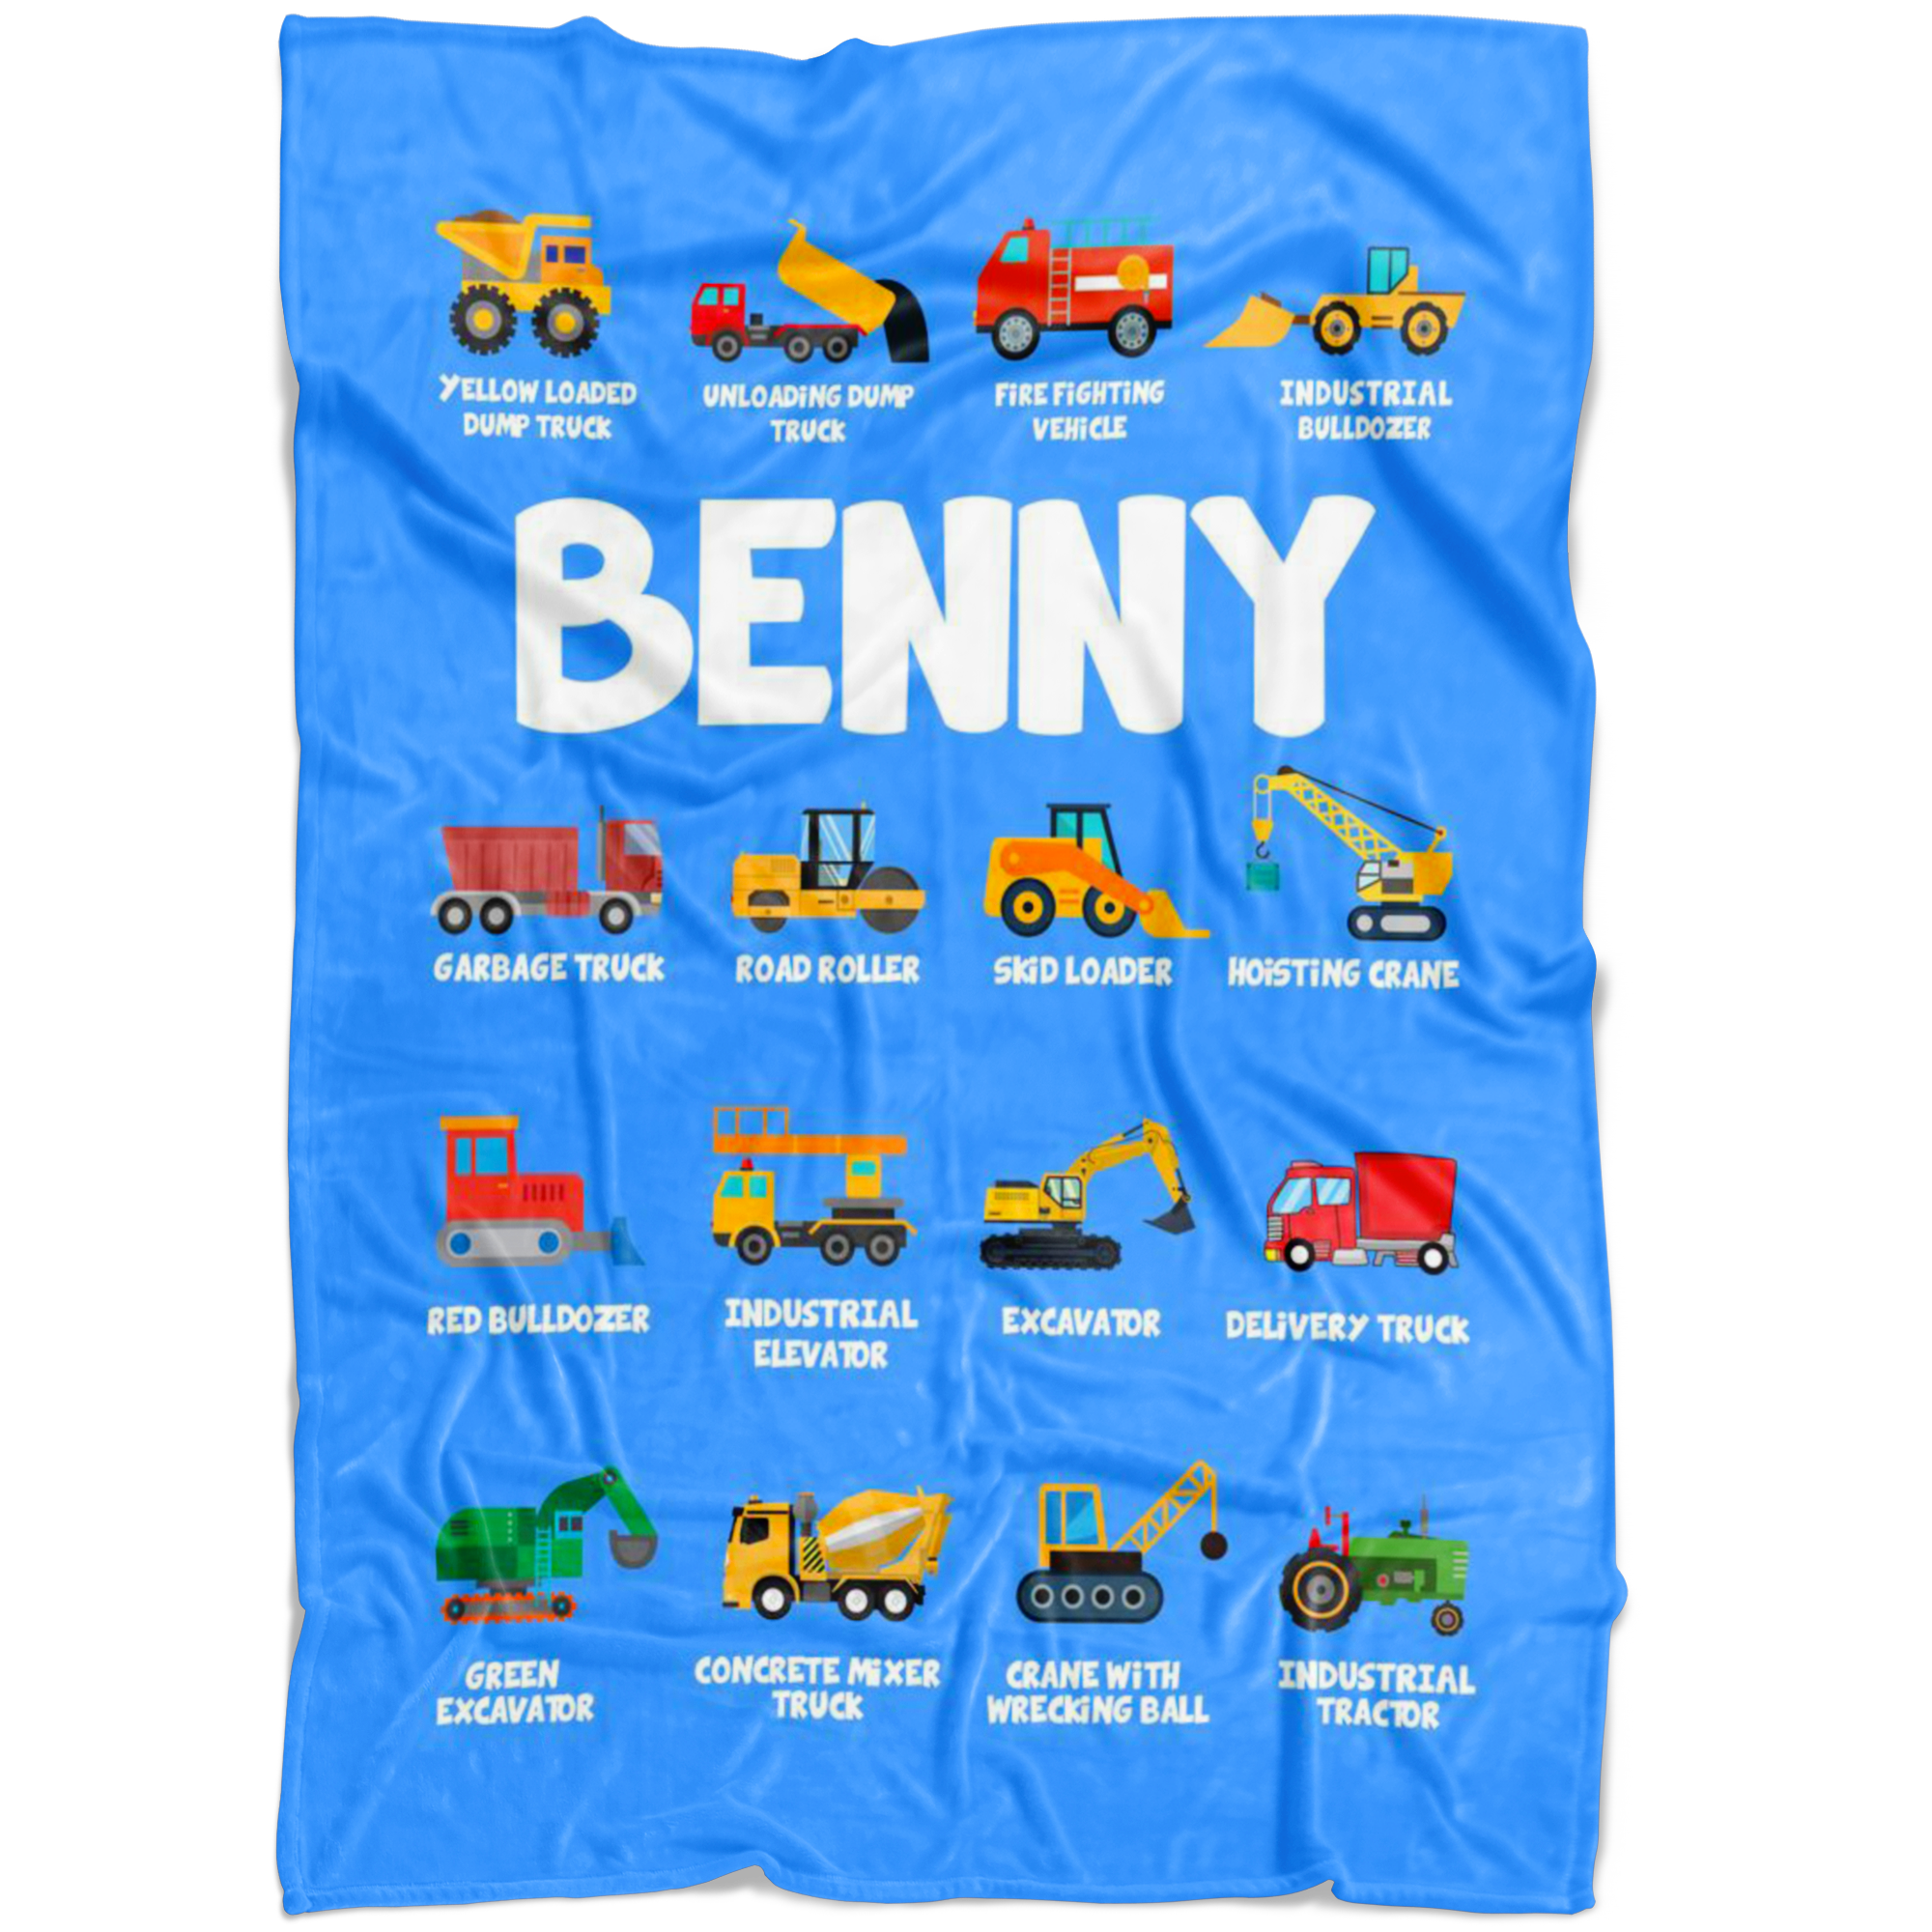 Benny Construction Blanket Blue